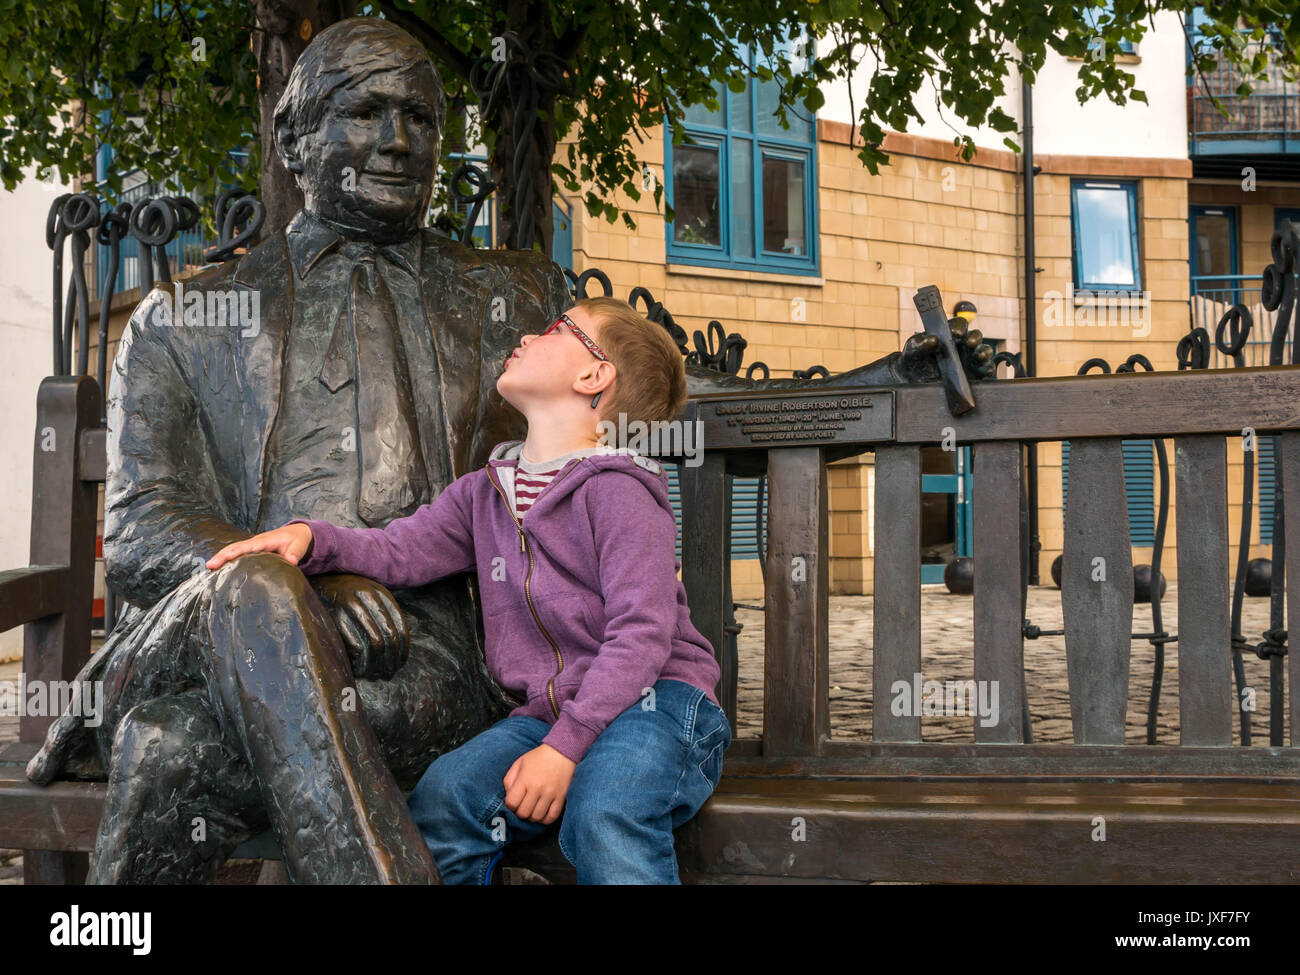 Cerrar joven con gafas admirando el bronce escultura conmemorativa de Sandy Irvine Robertson, comerciante de vinos locales en un banco en Leith, Edimburgo Foto de stock